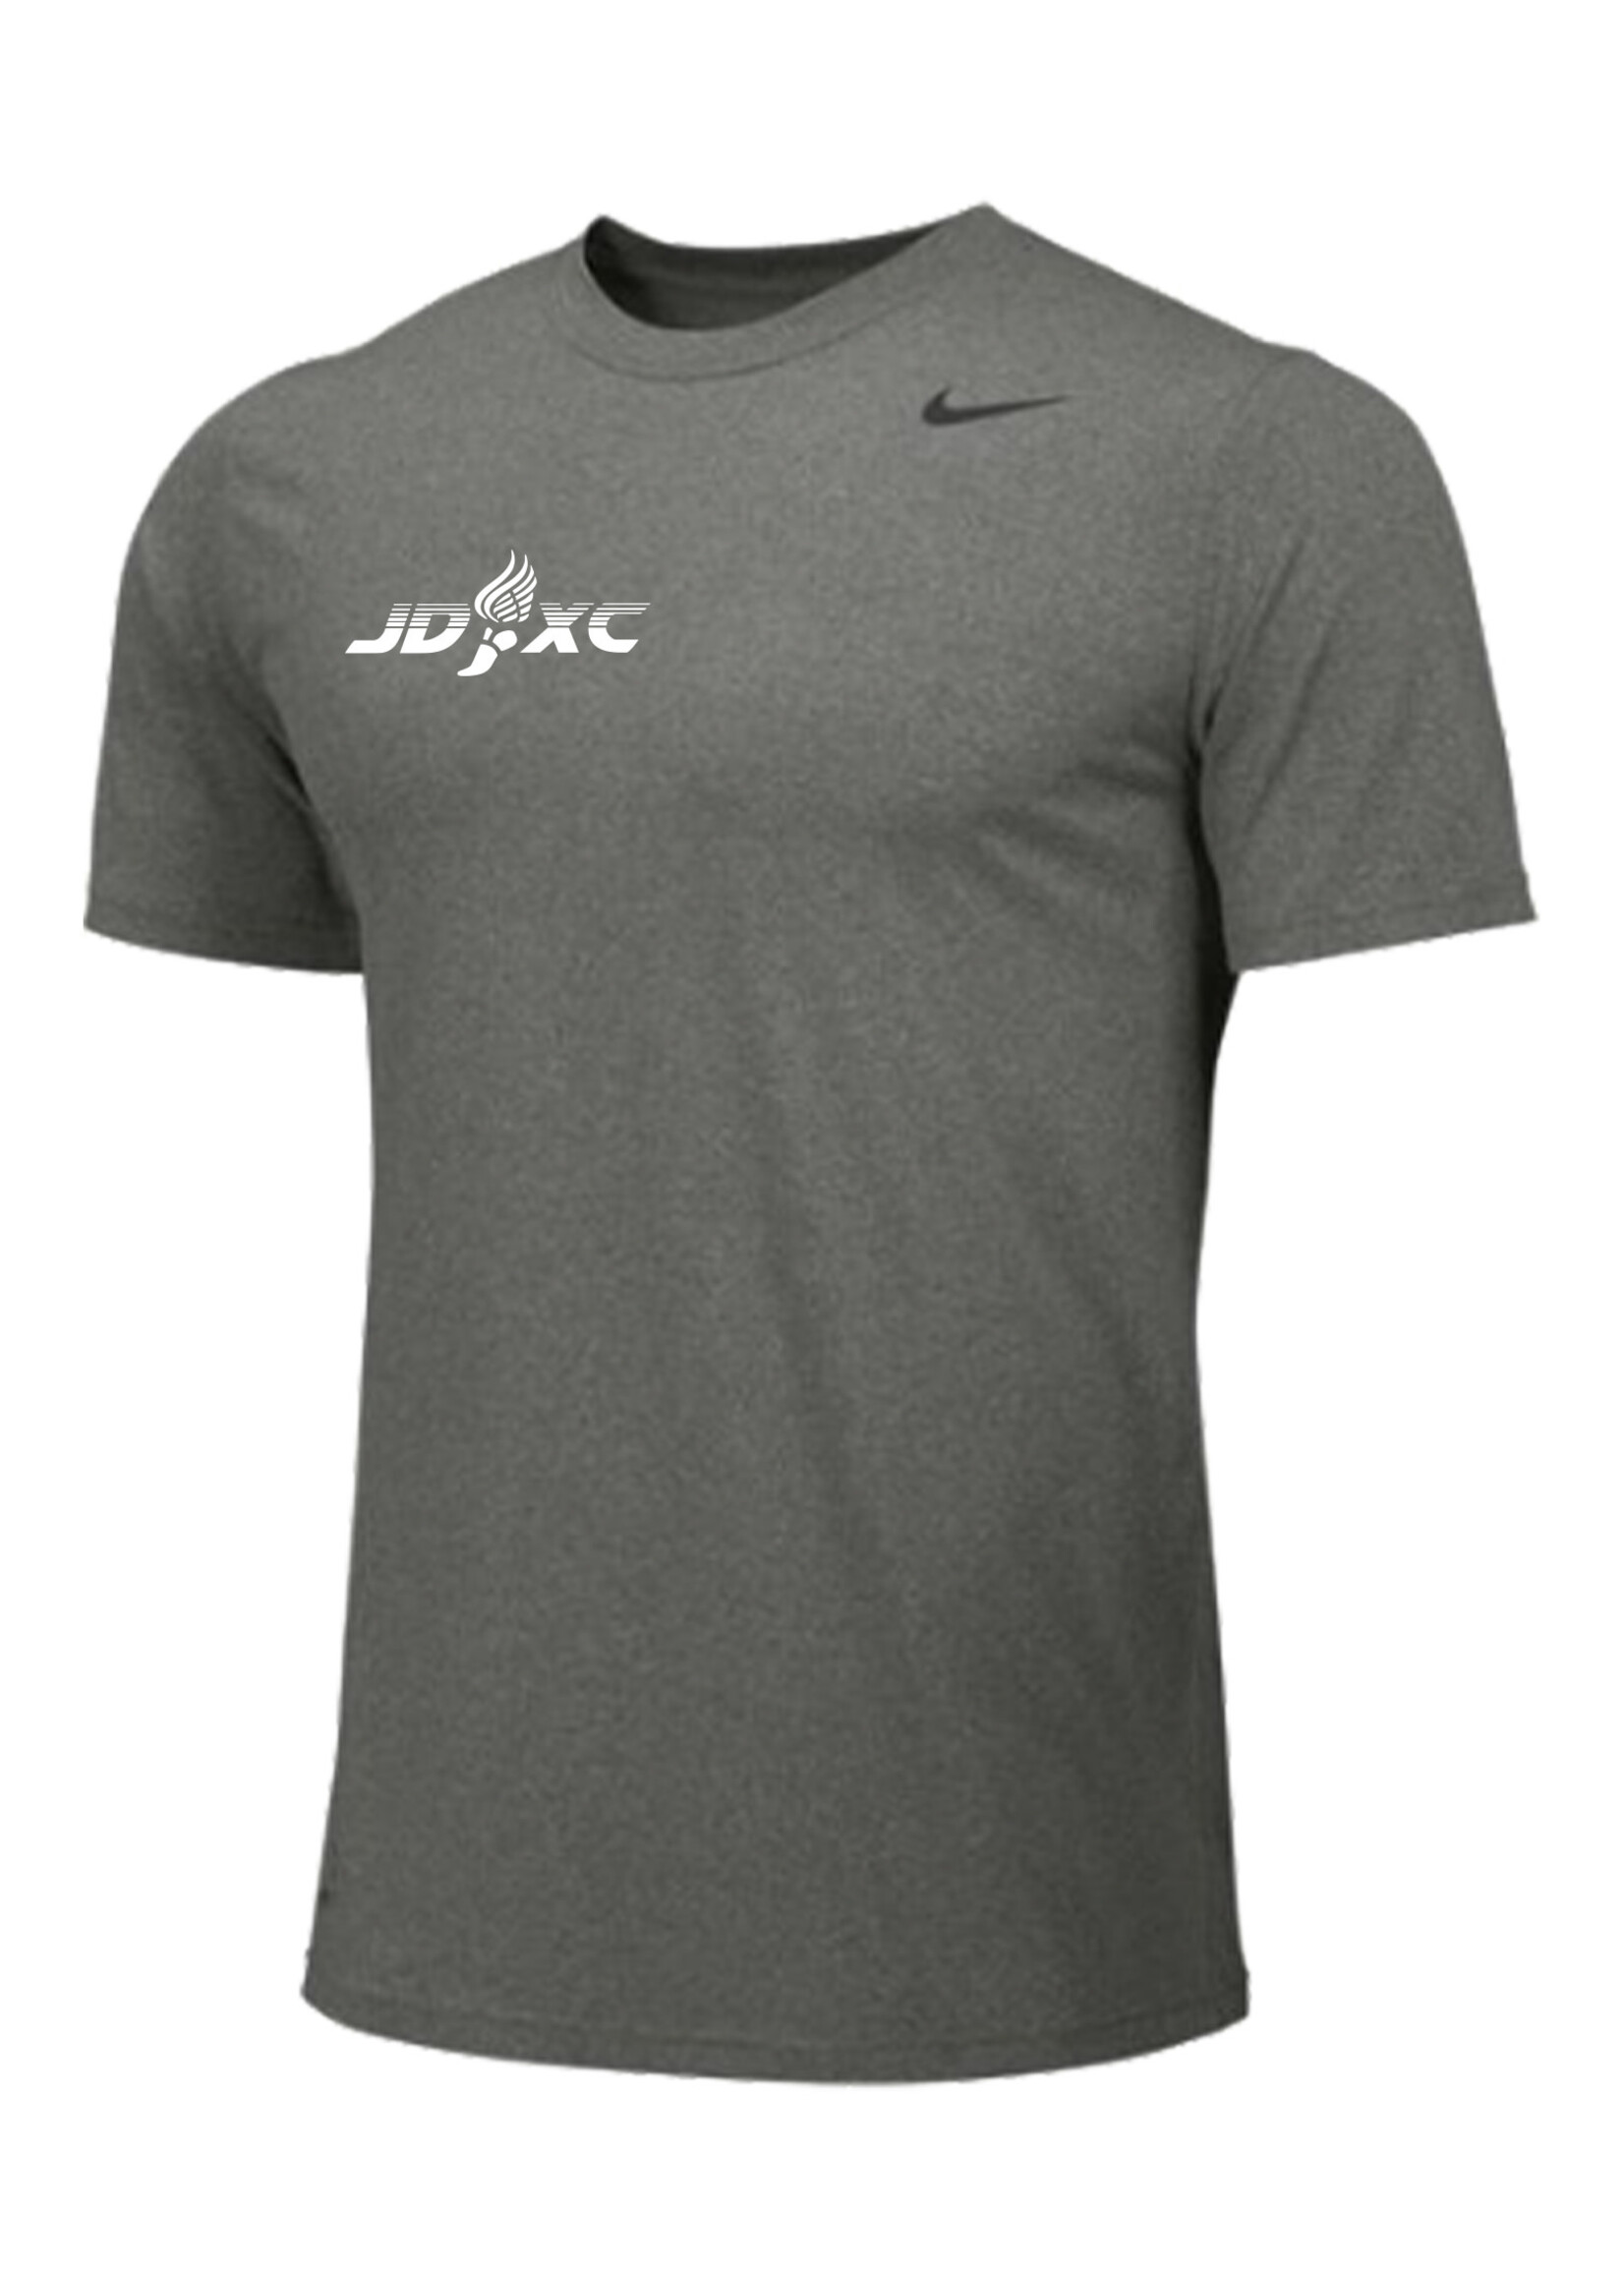 NON-UNIFORM JD Cross Country Nike Legend Short Sleeve Shirt, Men's & Women's